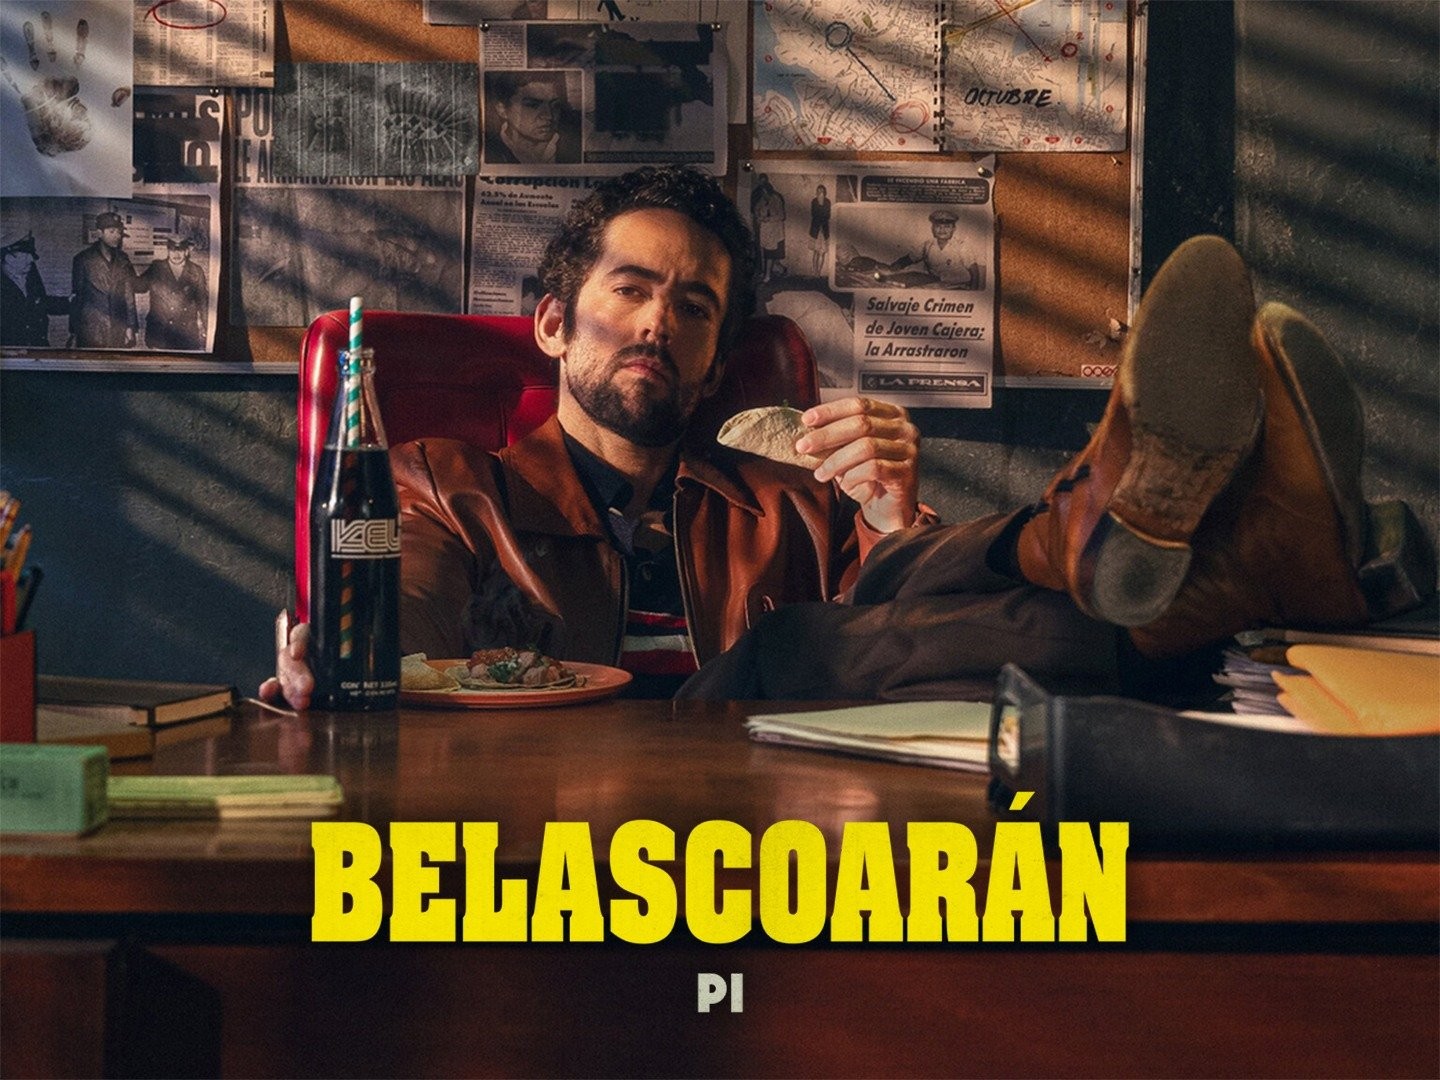 Belascoarán pi episodes